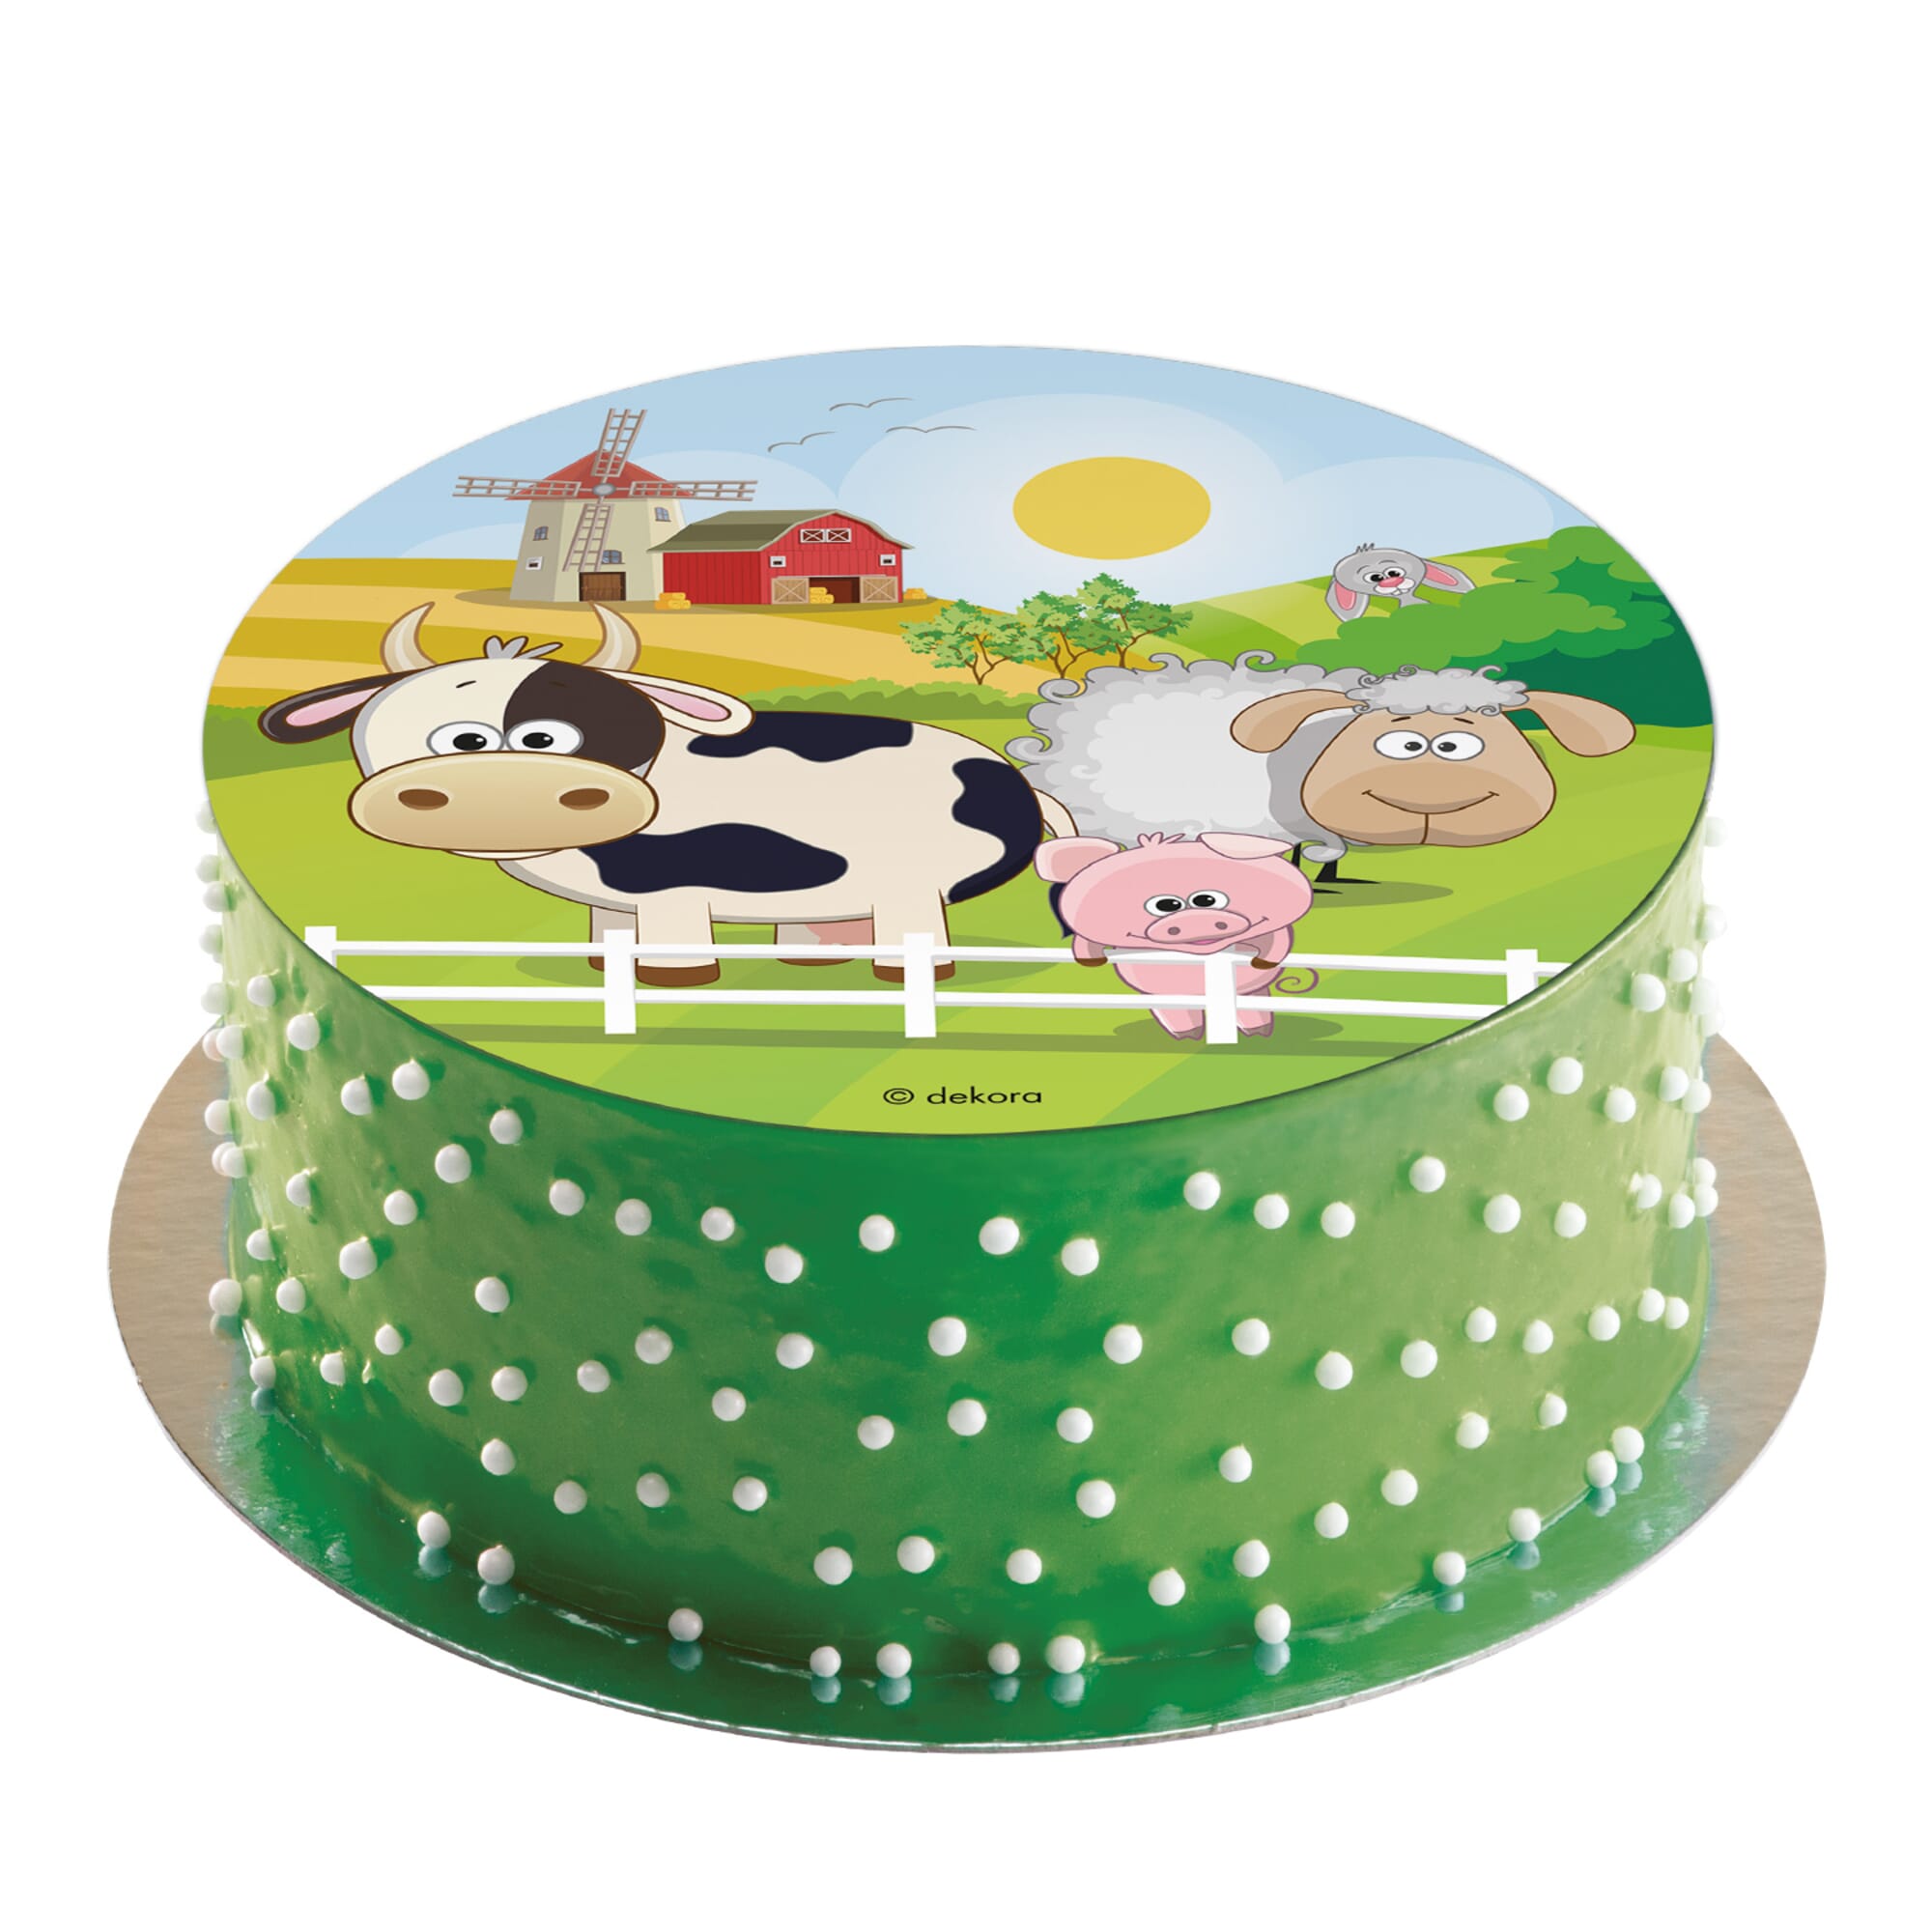 Décoration personnalisée pour anniversaire thème animaux de la ferme